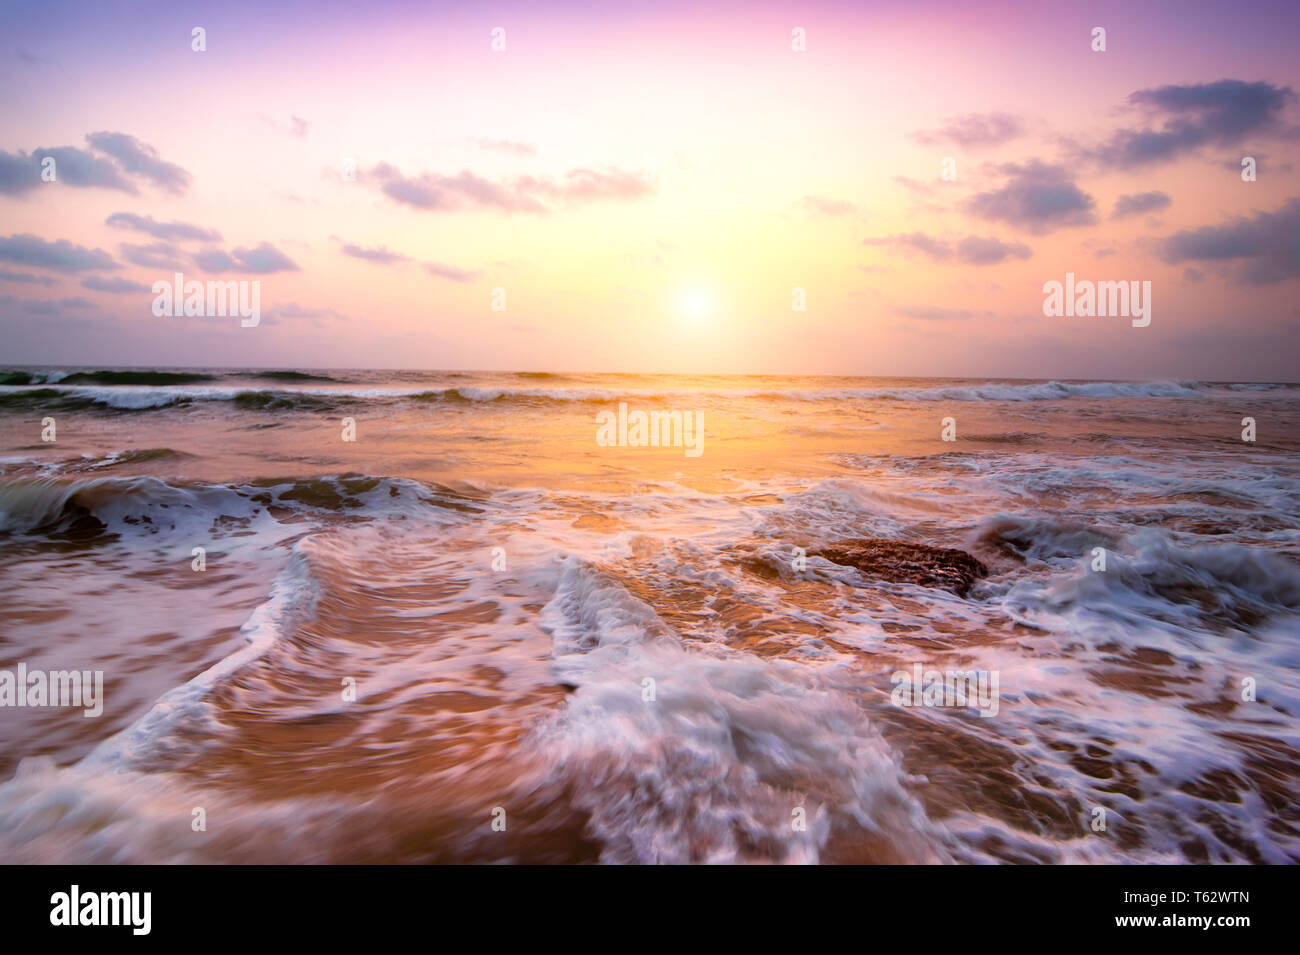 Fantastici colori della tempesta tropicale tramonto a spiaggia sabbiosa. Costa dell'oceano sotto il sole di sera. India del sud paesaggio Foto Stock